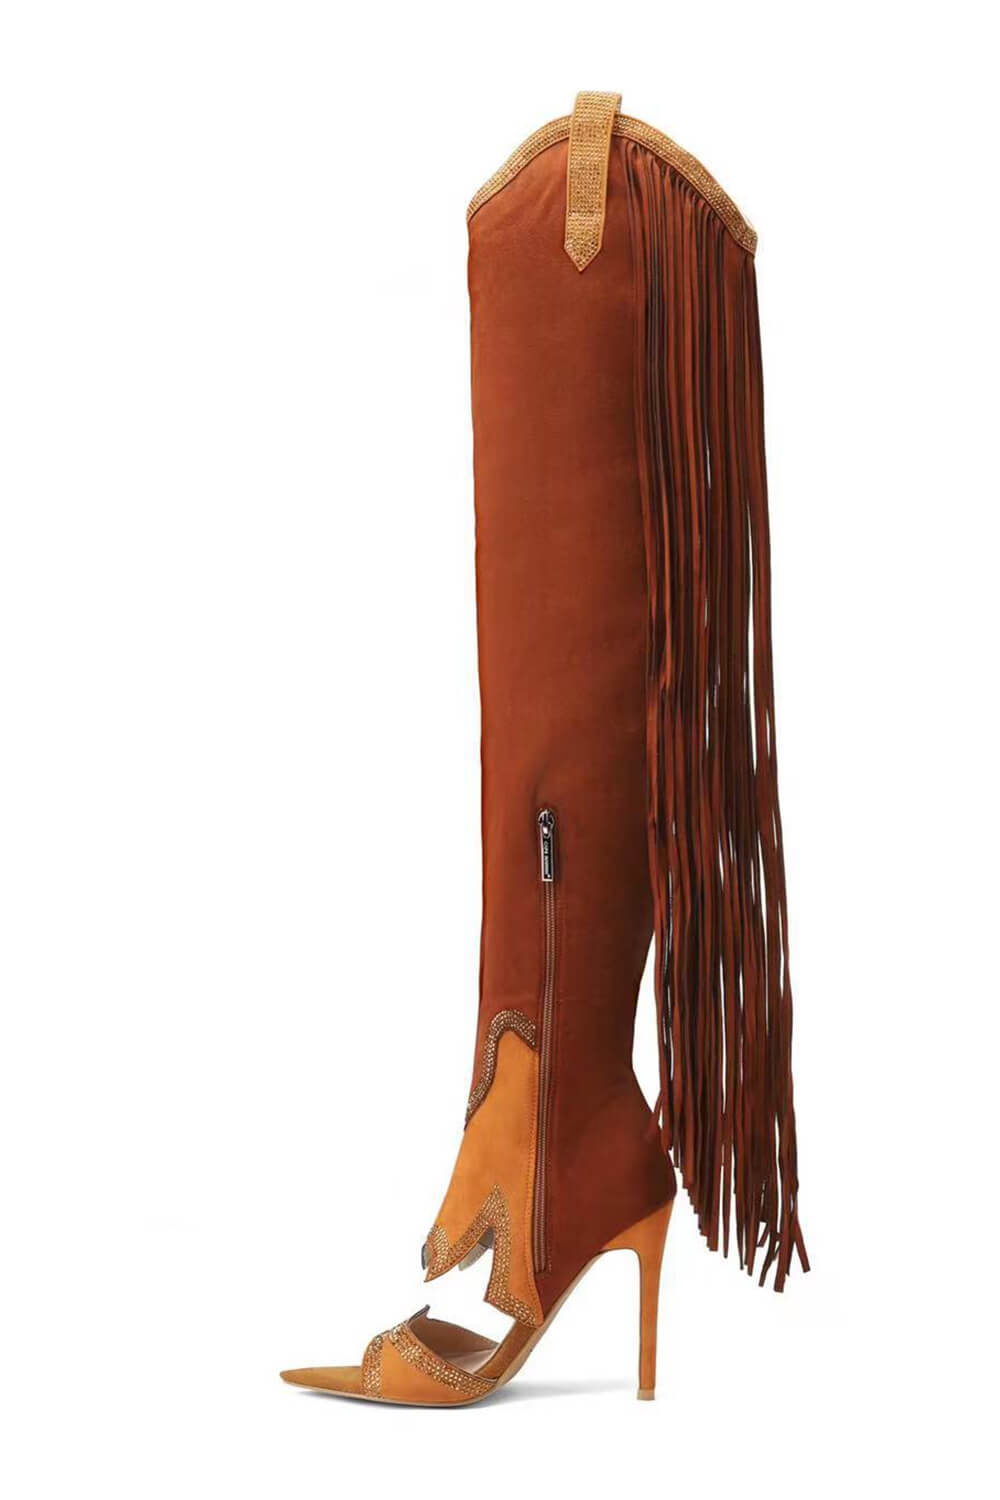 Rhinestone Embellished Fringe Cut Out Western Cowboy Open Toe Stiletto Boots - Orange